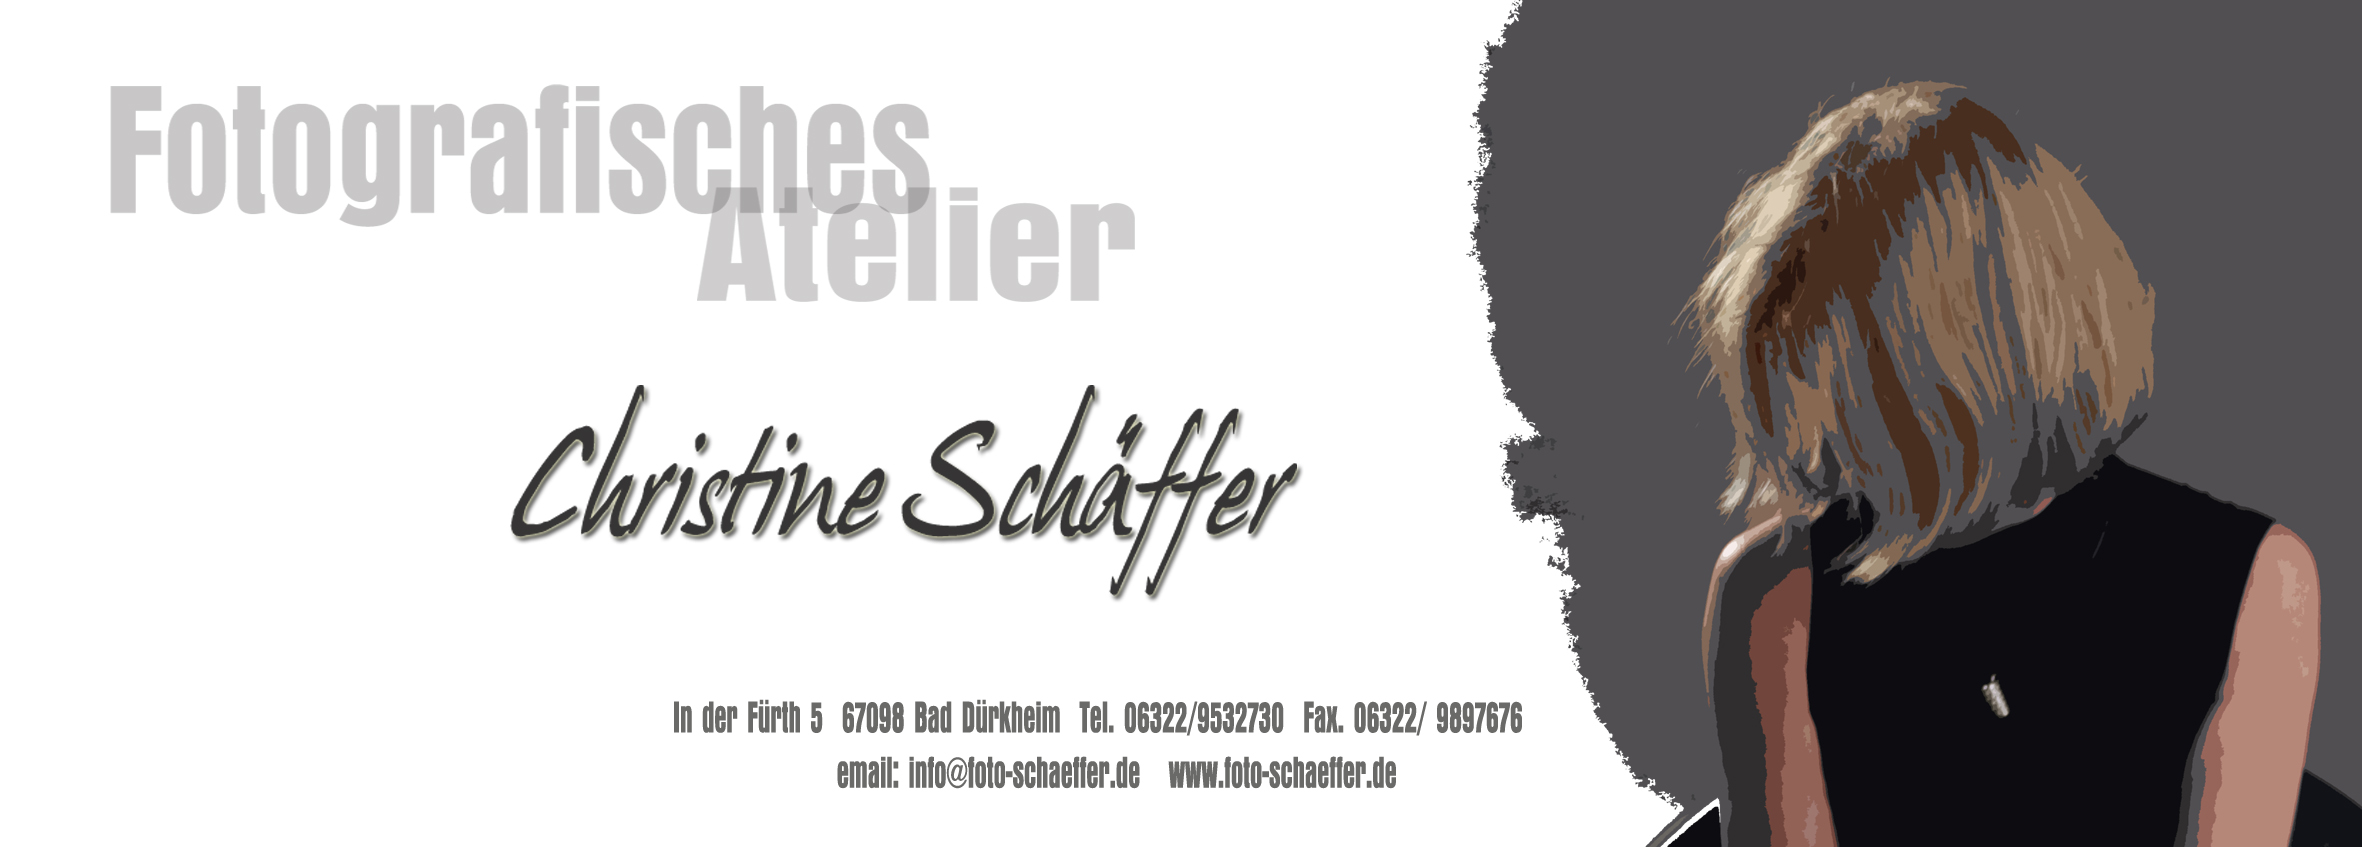 Fotografisches Atelier Christine Schäffer